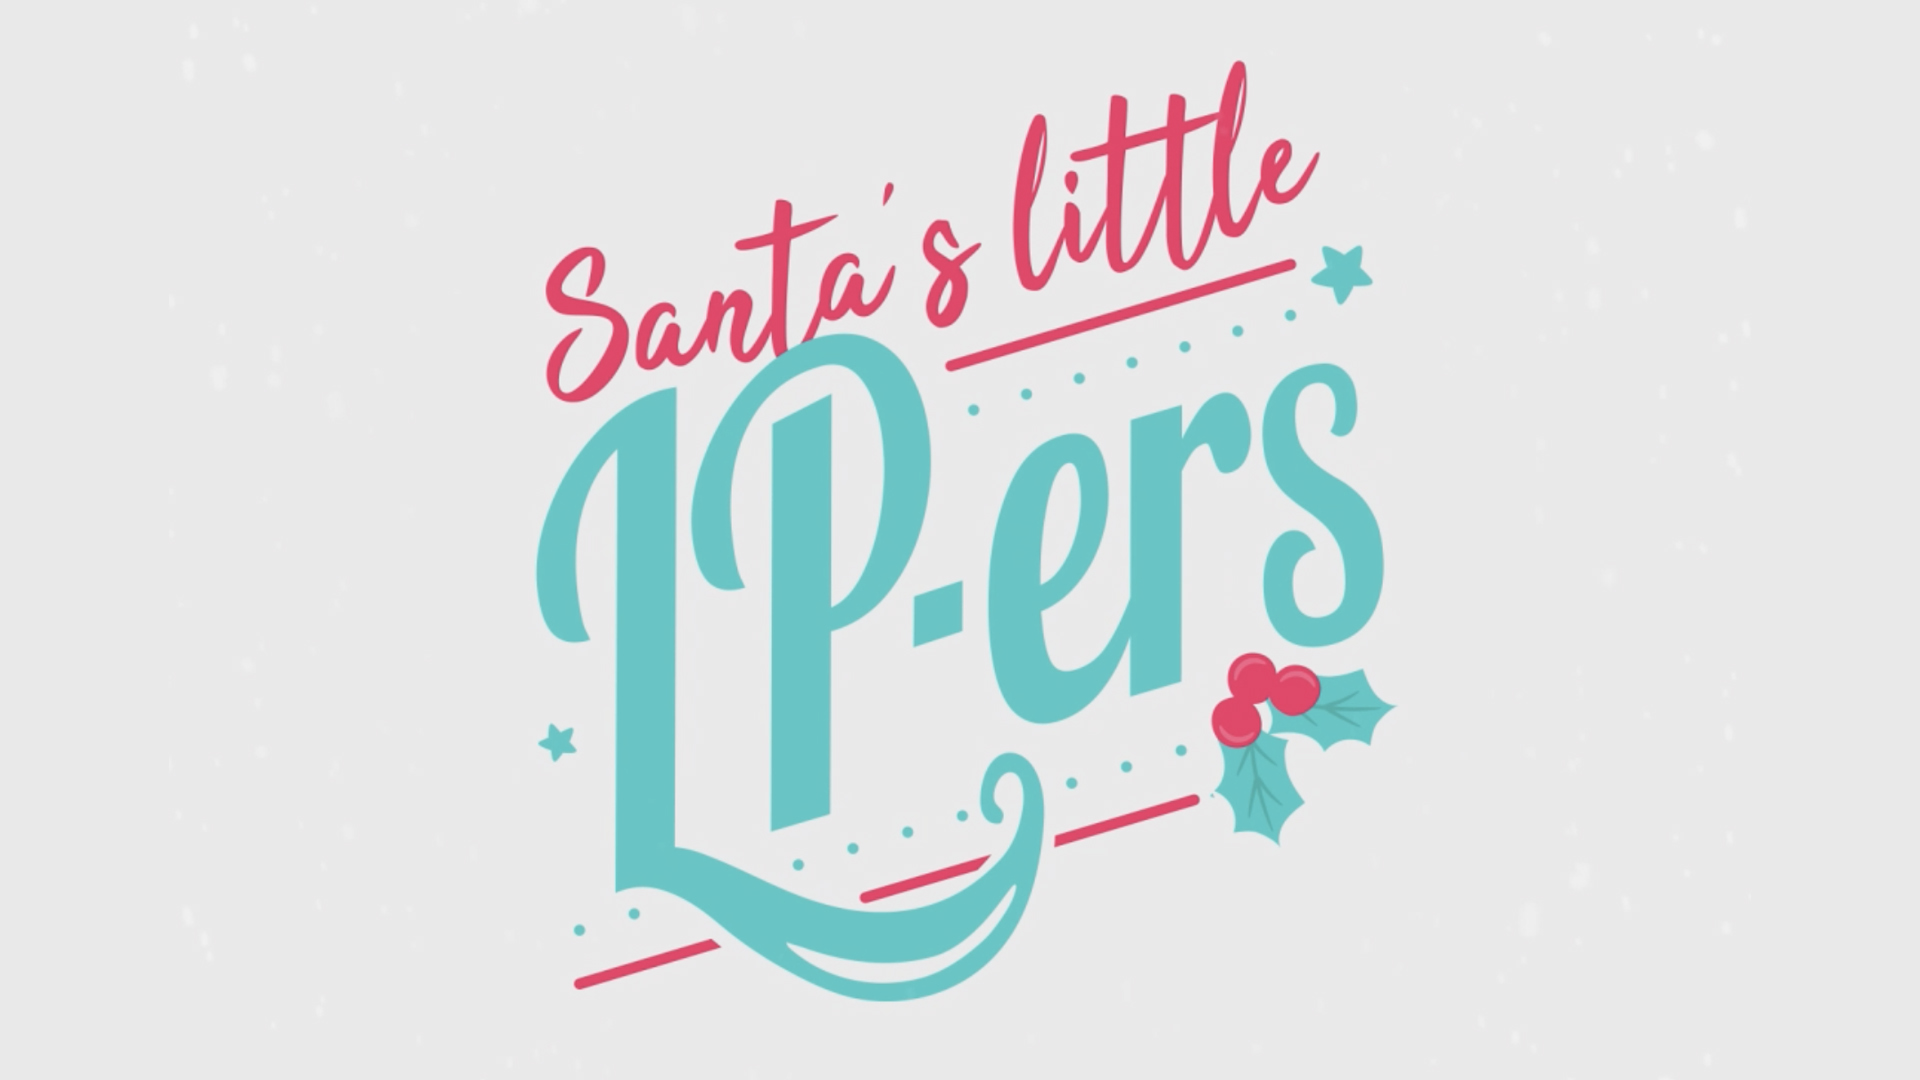 Santa’s Little LP-ers